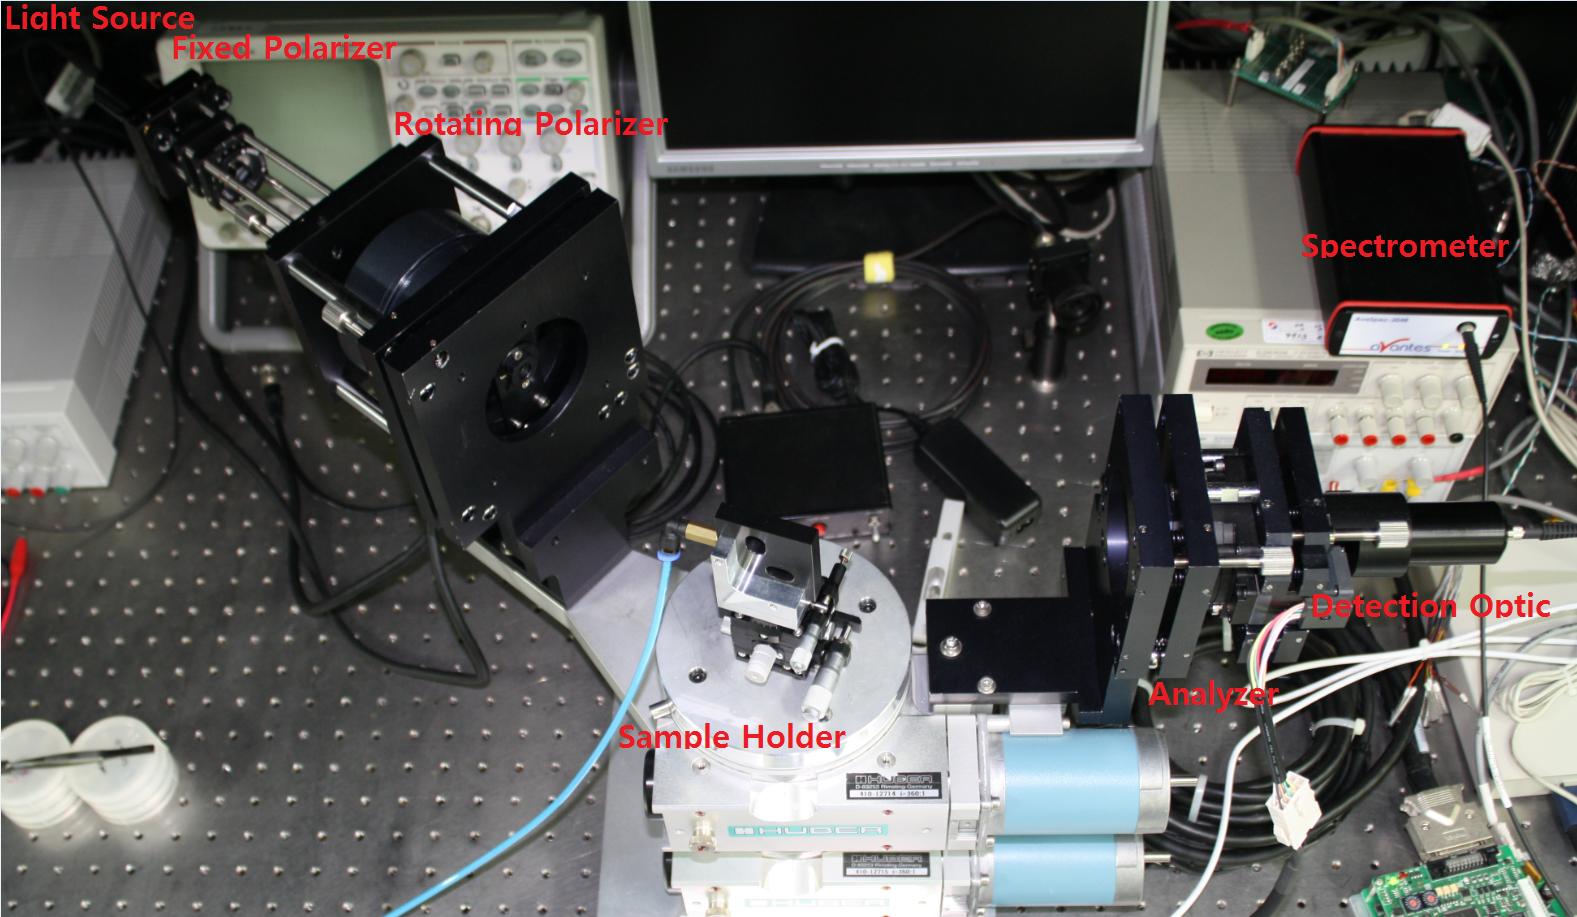 자체 개잘된 3개의 편광자로 구성된 다채널 분광타원계측기